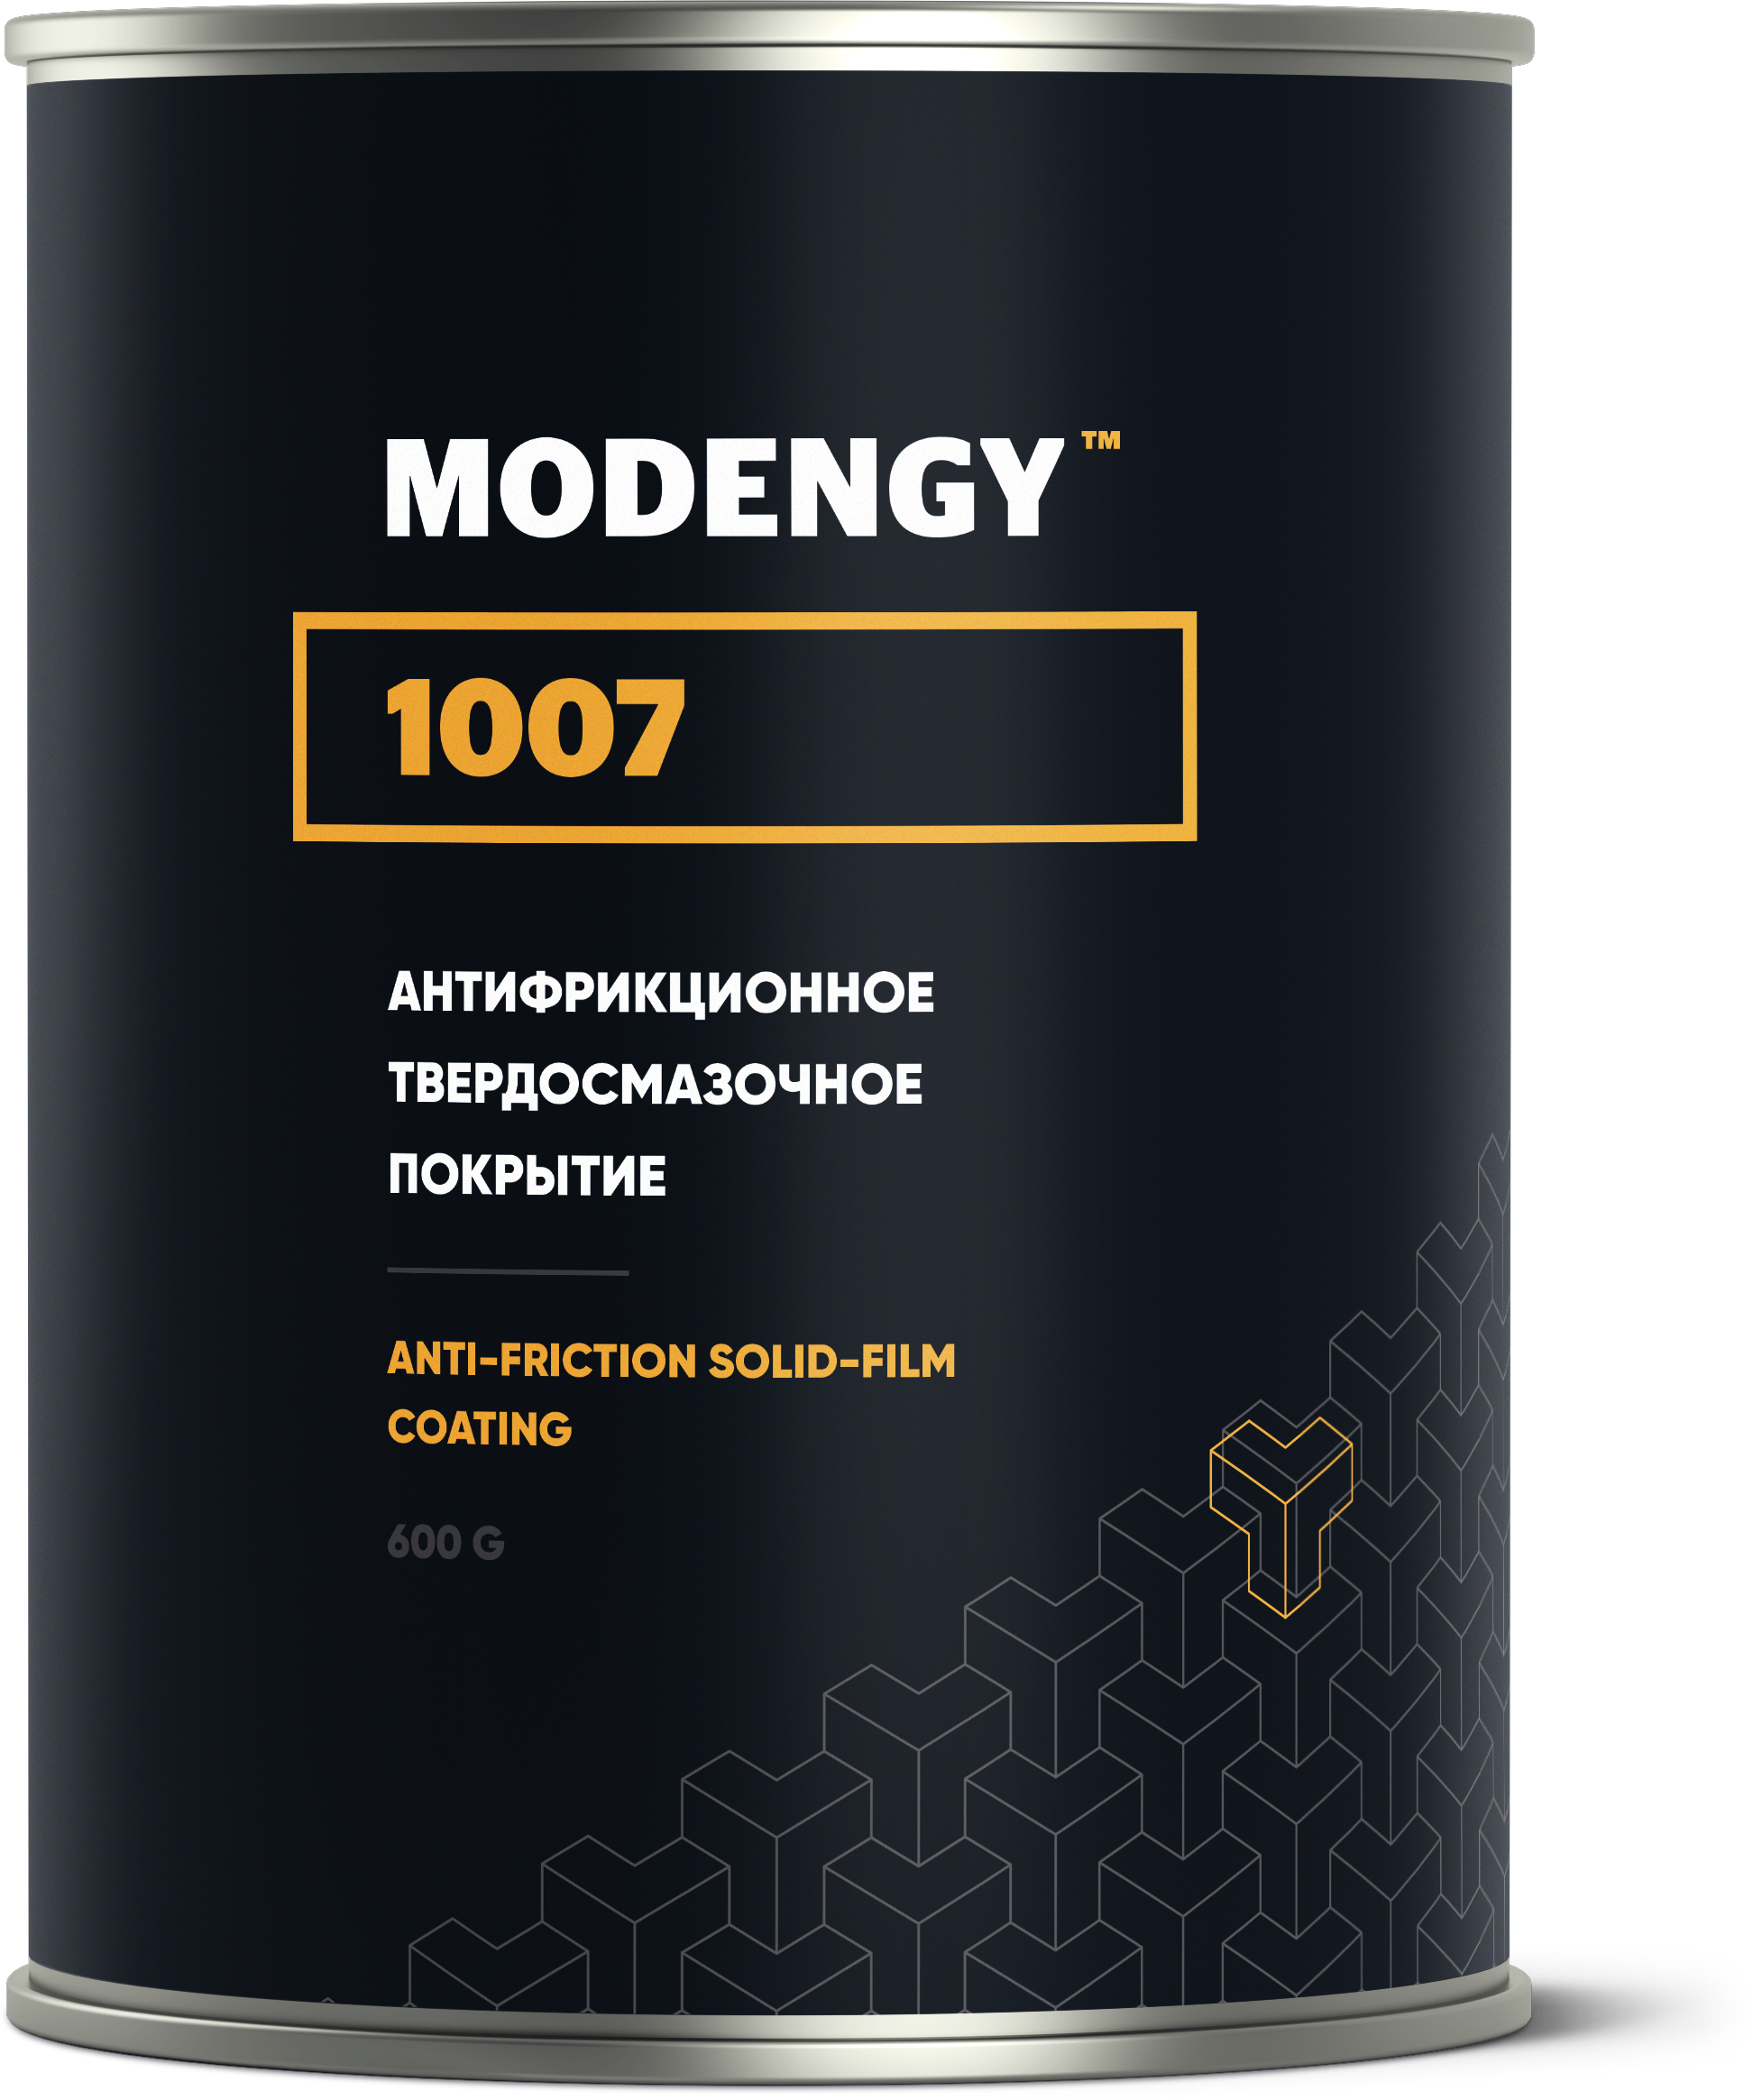 Антифрикционное твердосмазочное покрытие MODENGY 1007 (600 г)